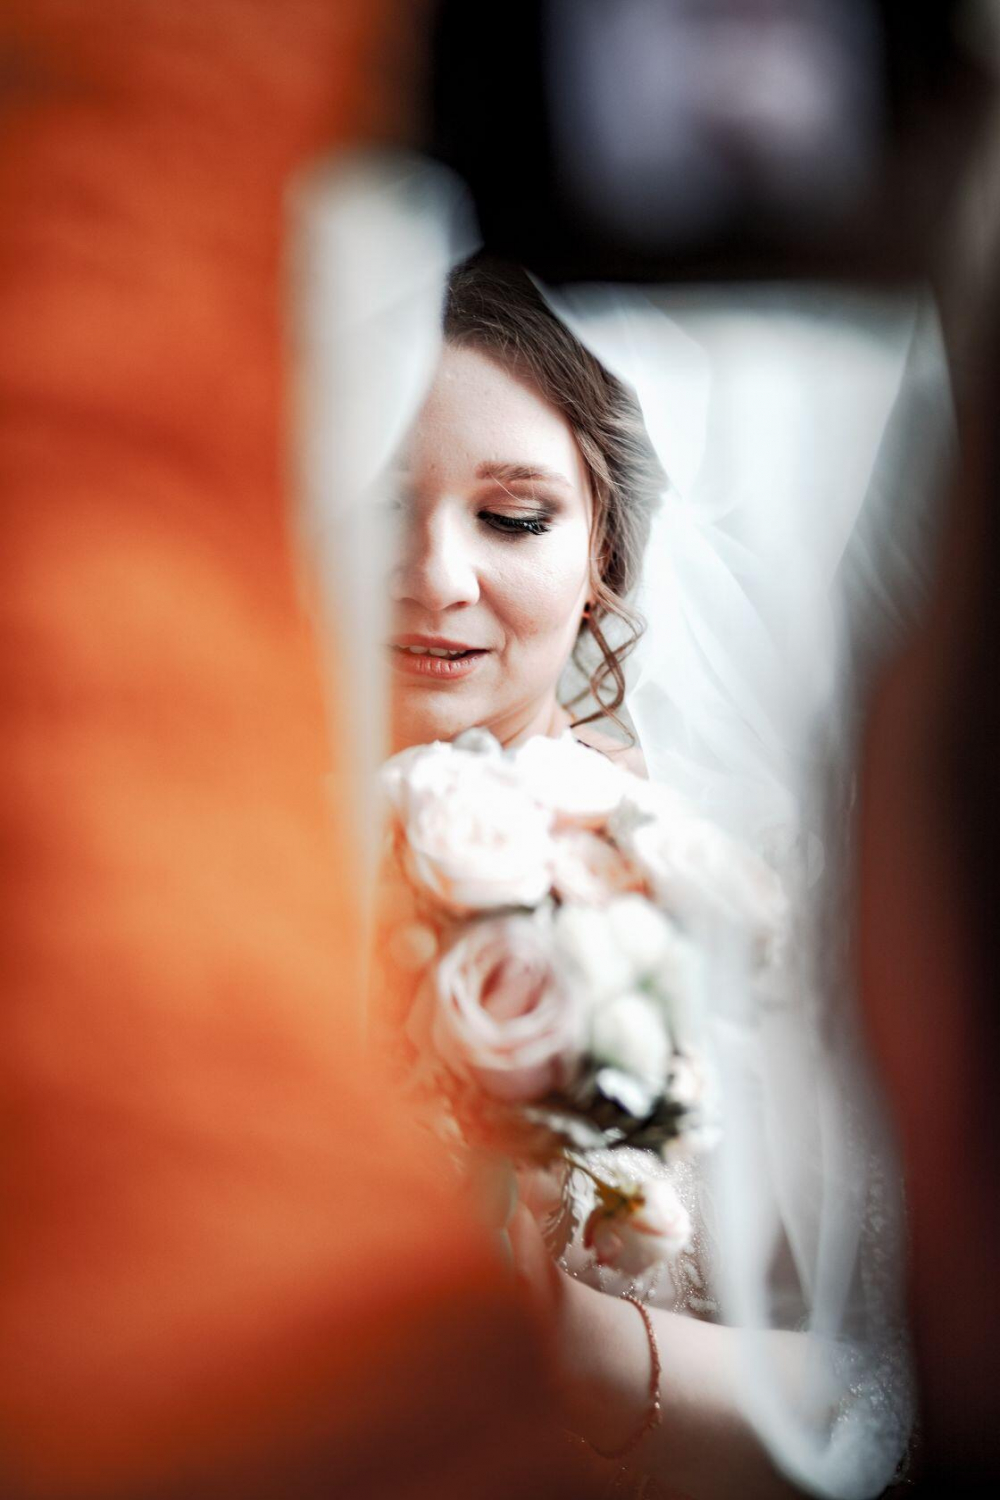 Фотограф на свадьбу в Волгограде. Художественные фото Вашей свадьбы по доступной цене.